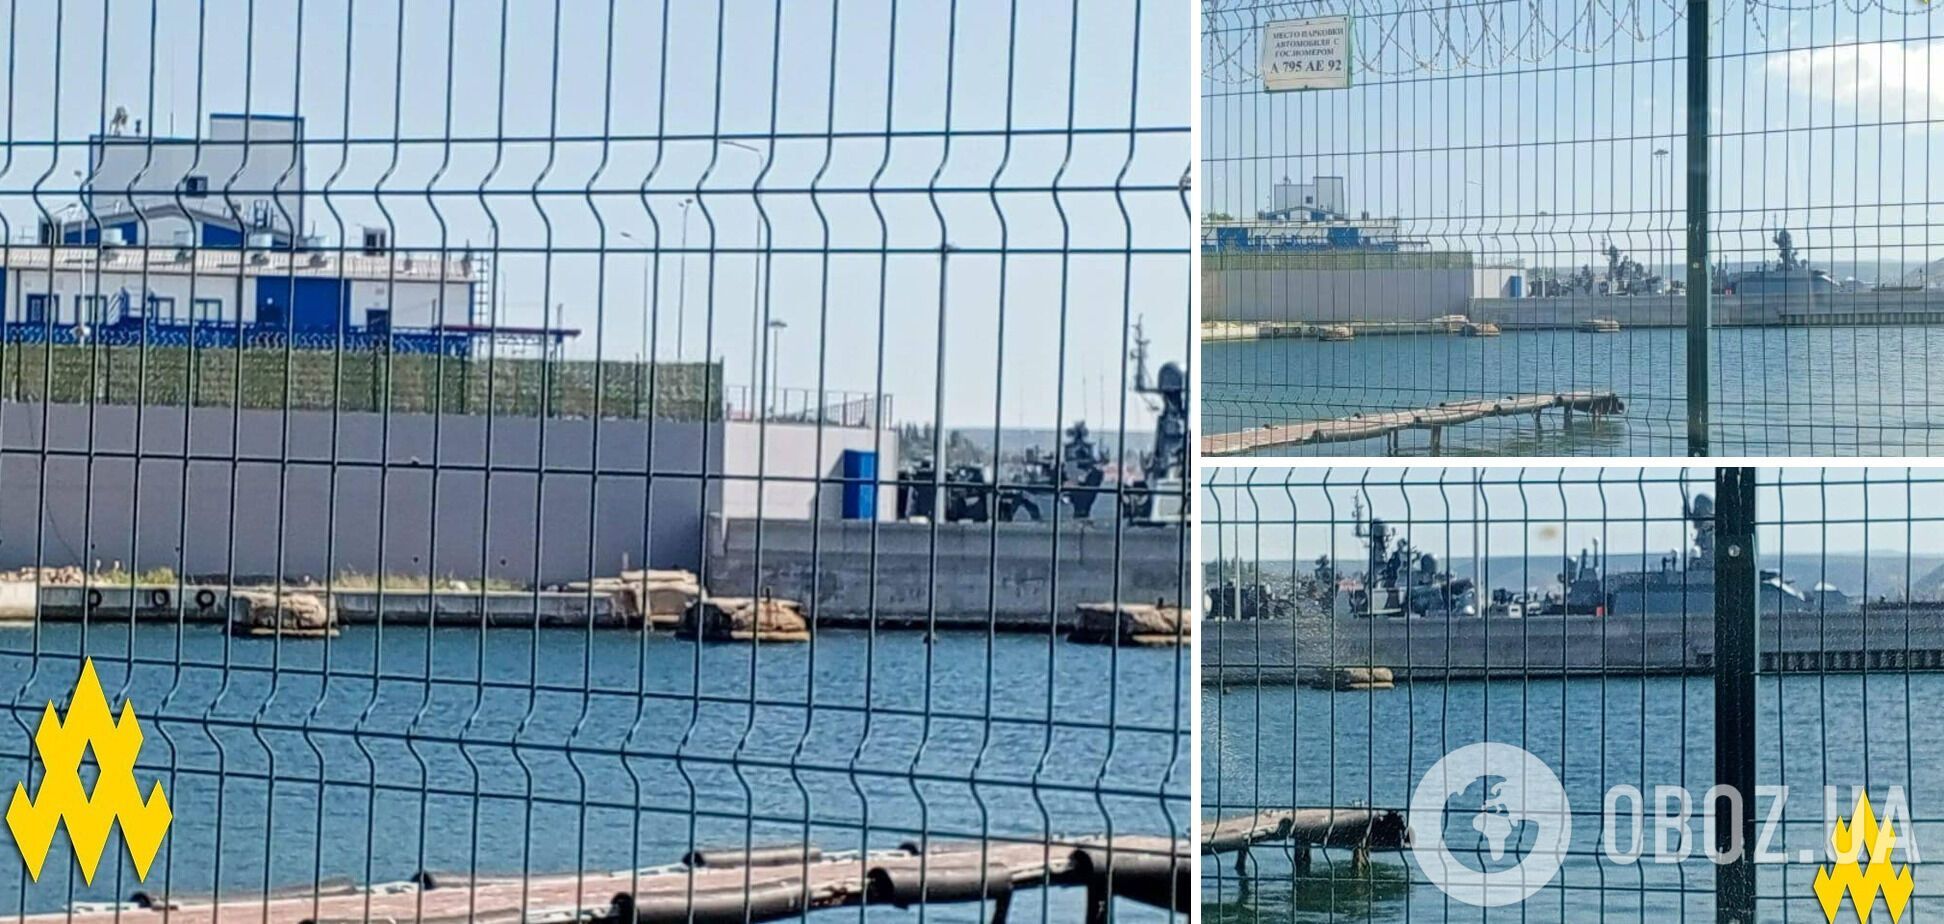 'У Криму вам ніде не сховатись': партизани 'Атеш' показали розташування кораблів ЧФ у Севастопольській бухті. Фото